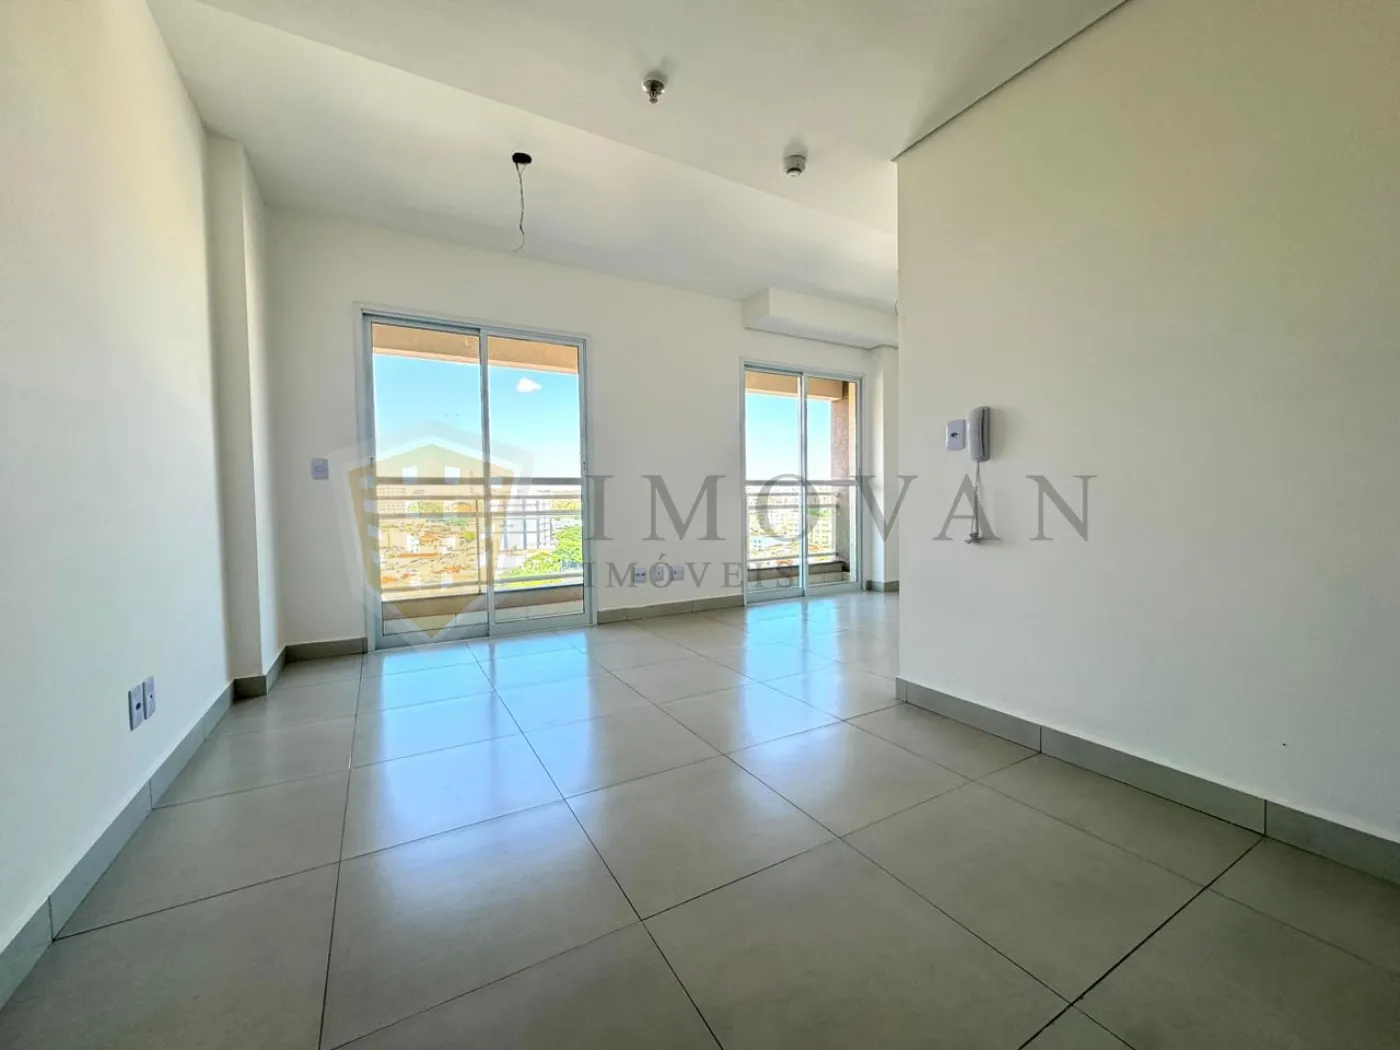 Comprar Apartamento / Kitchnet em Ribeirão Preto R$ 230.000,00 - Foto 2